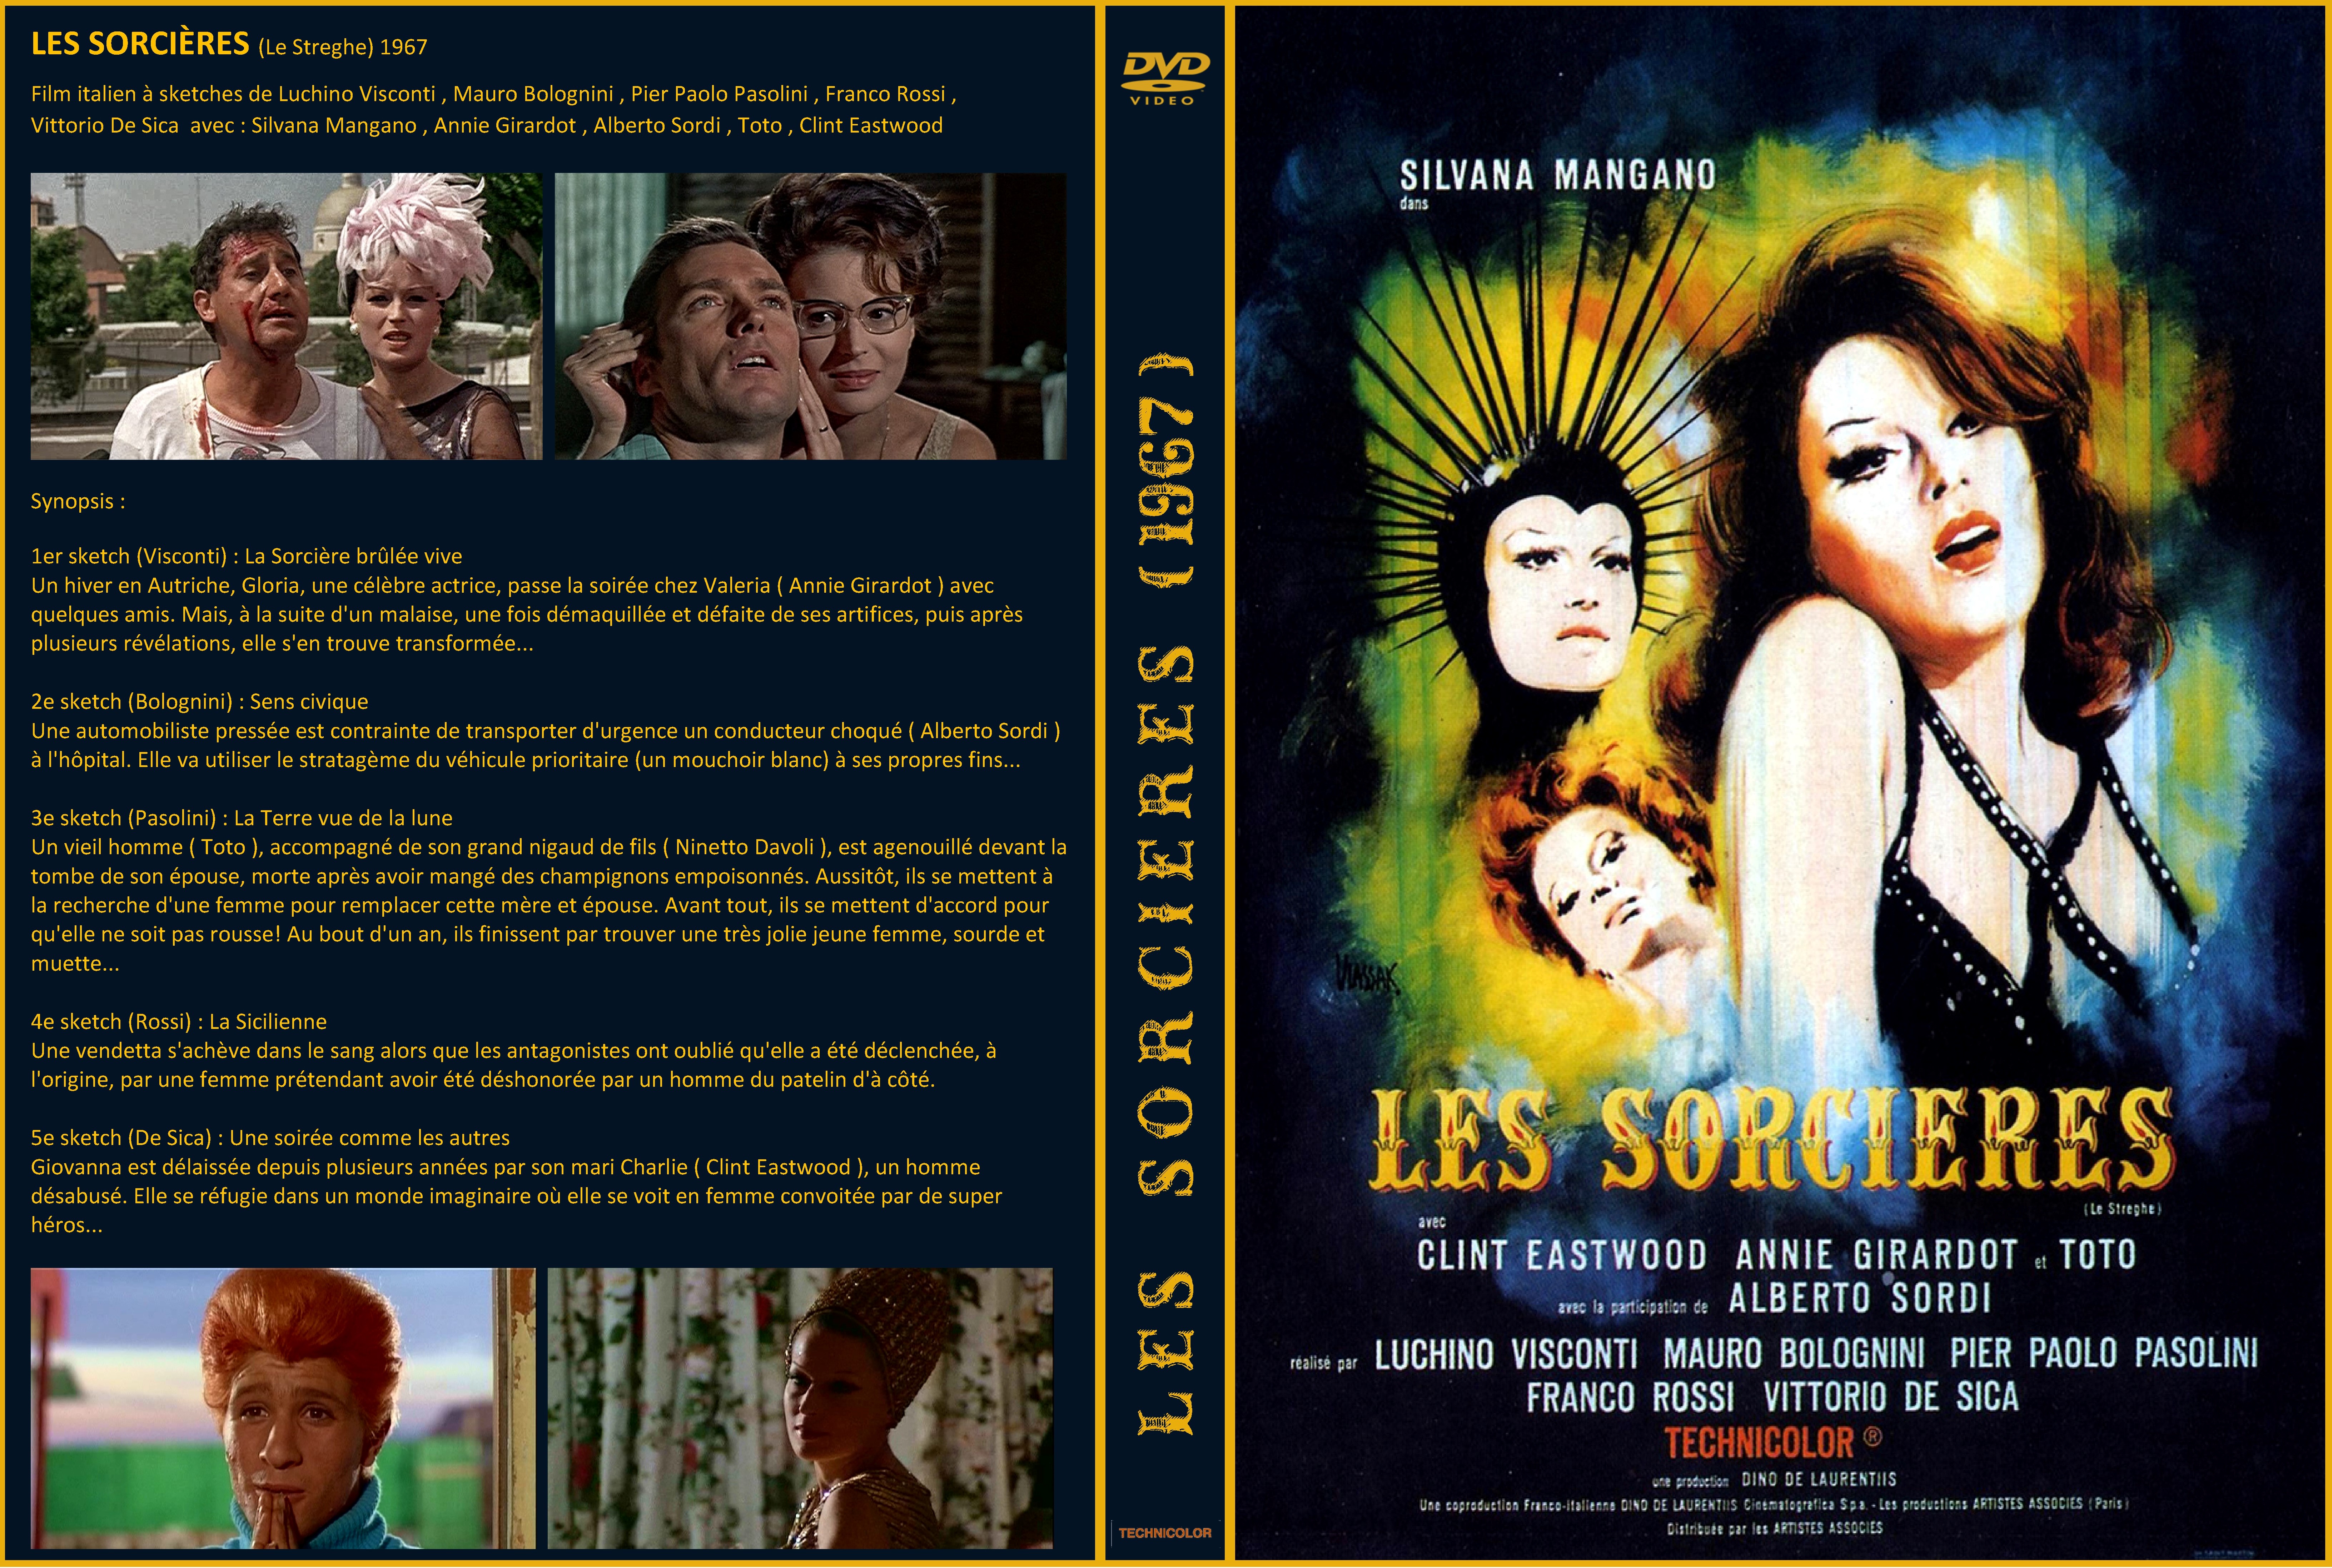 Jaquette DVD Les Sorcires (1967) custom